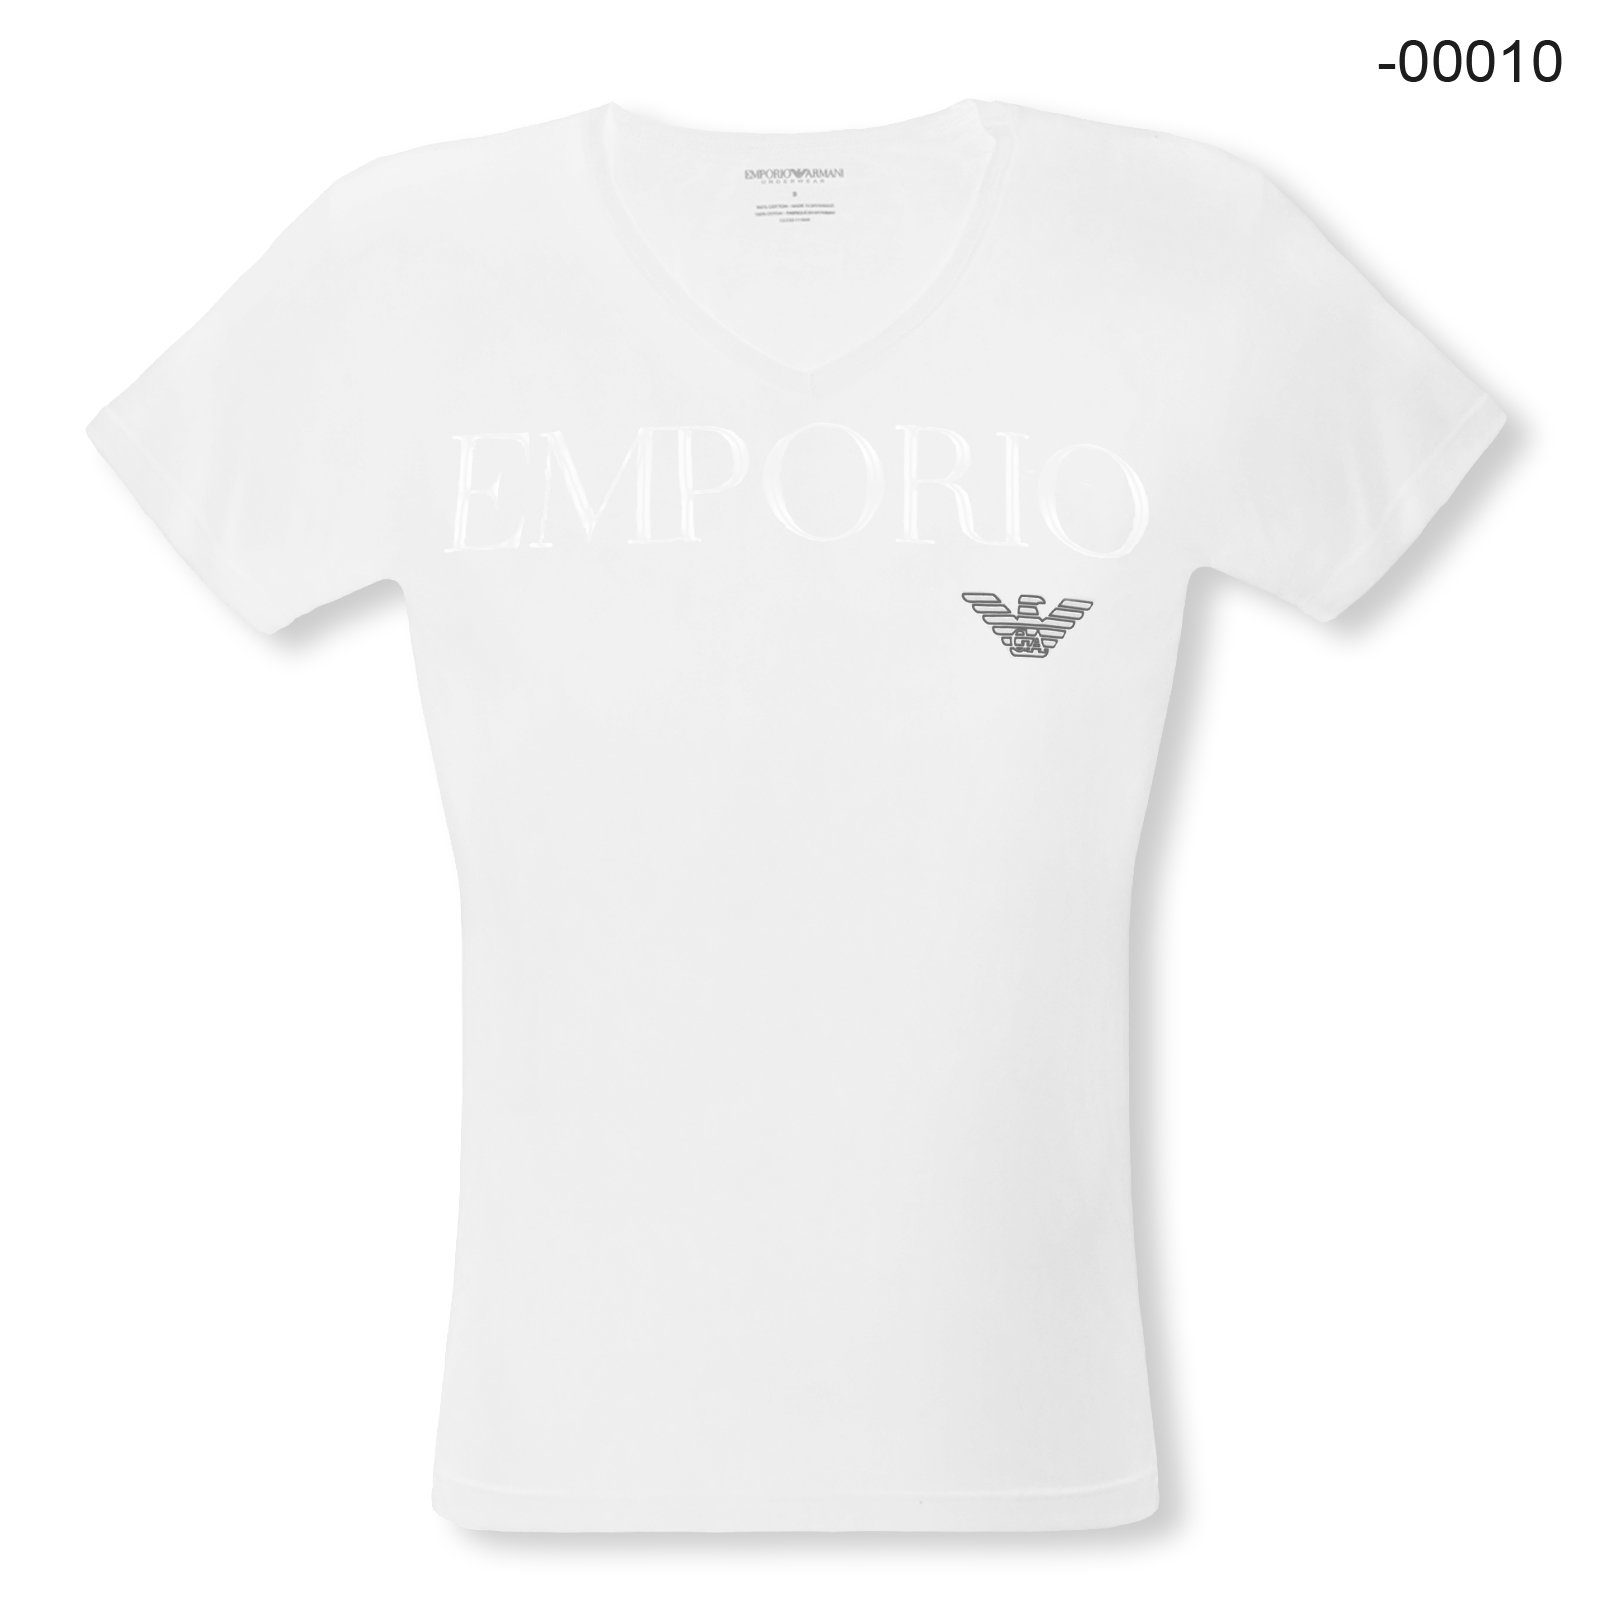 Emporio Armani T-Shirt V-Neck Stretch Cotton mit Markenschriftzug und Eagle-Logo auf der Brust 00010 white | V-Shirts